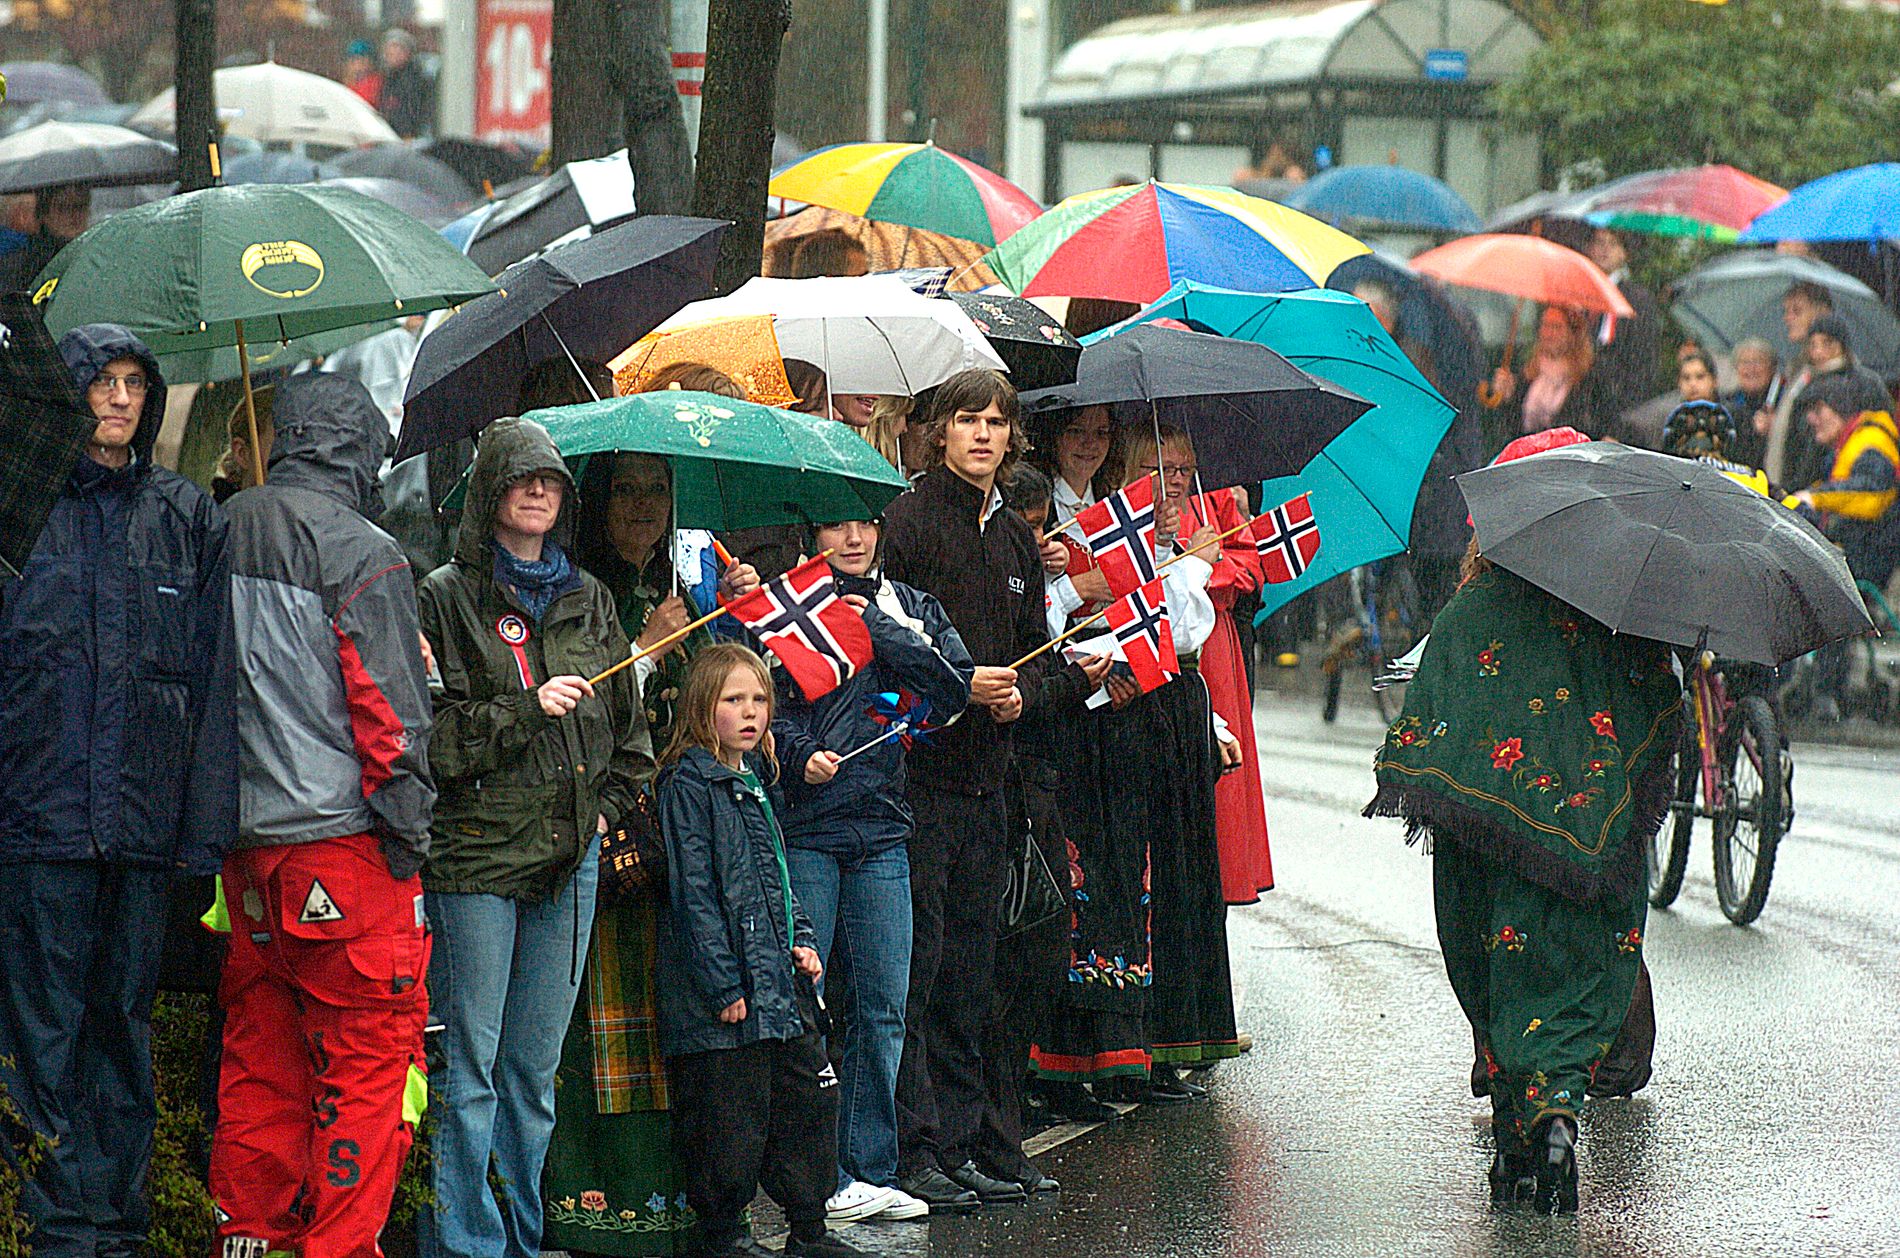 Klassisk 17. mai i Stavanger...! Heldigvis spår meteorologen sol og fint vær i år. 